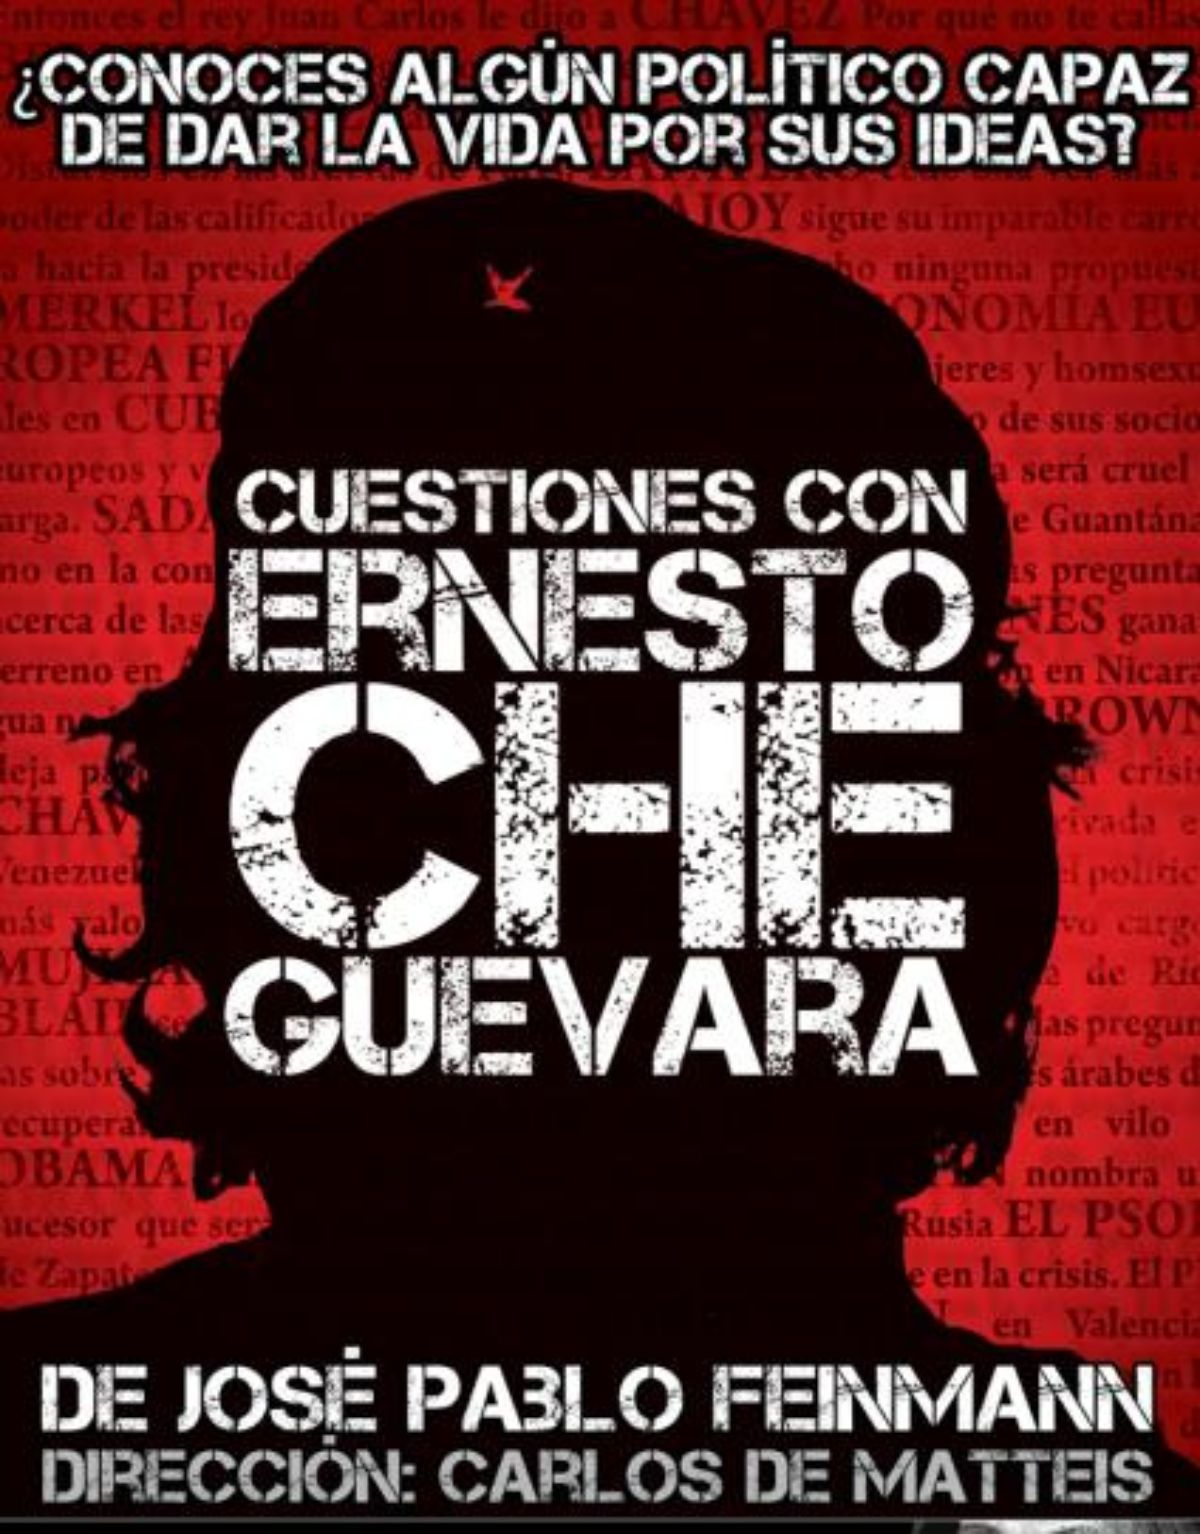 Cartel de Cuestiones con Ernesto Che Guevara